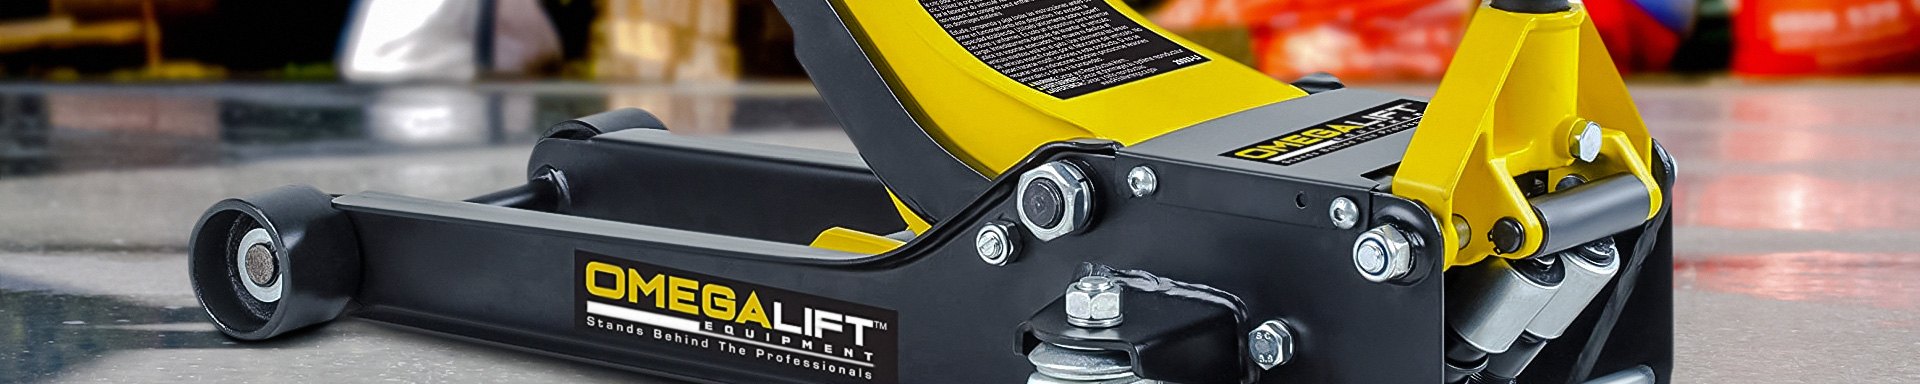 Omega Lift Equipment Dent Repair Tools